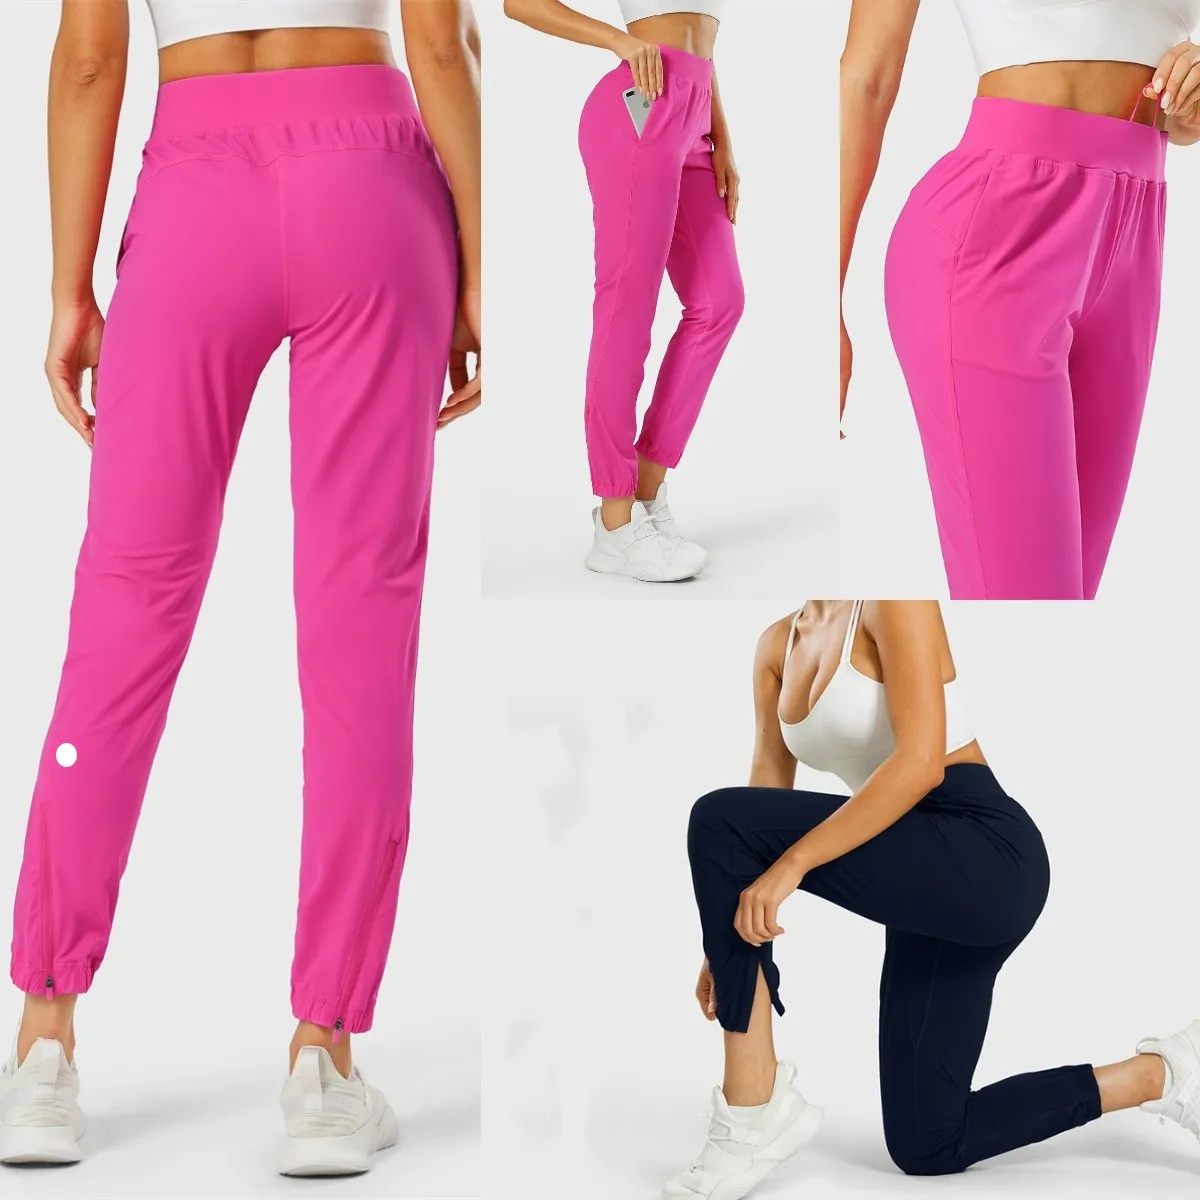 LU-1028 femmes vêtements de Yoga fille Jogging état adapté extensible taille haute sangle d'entraînement pantalon de gymnastique